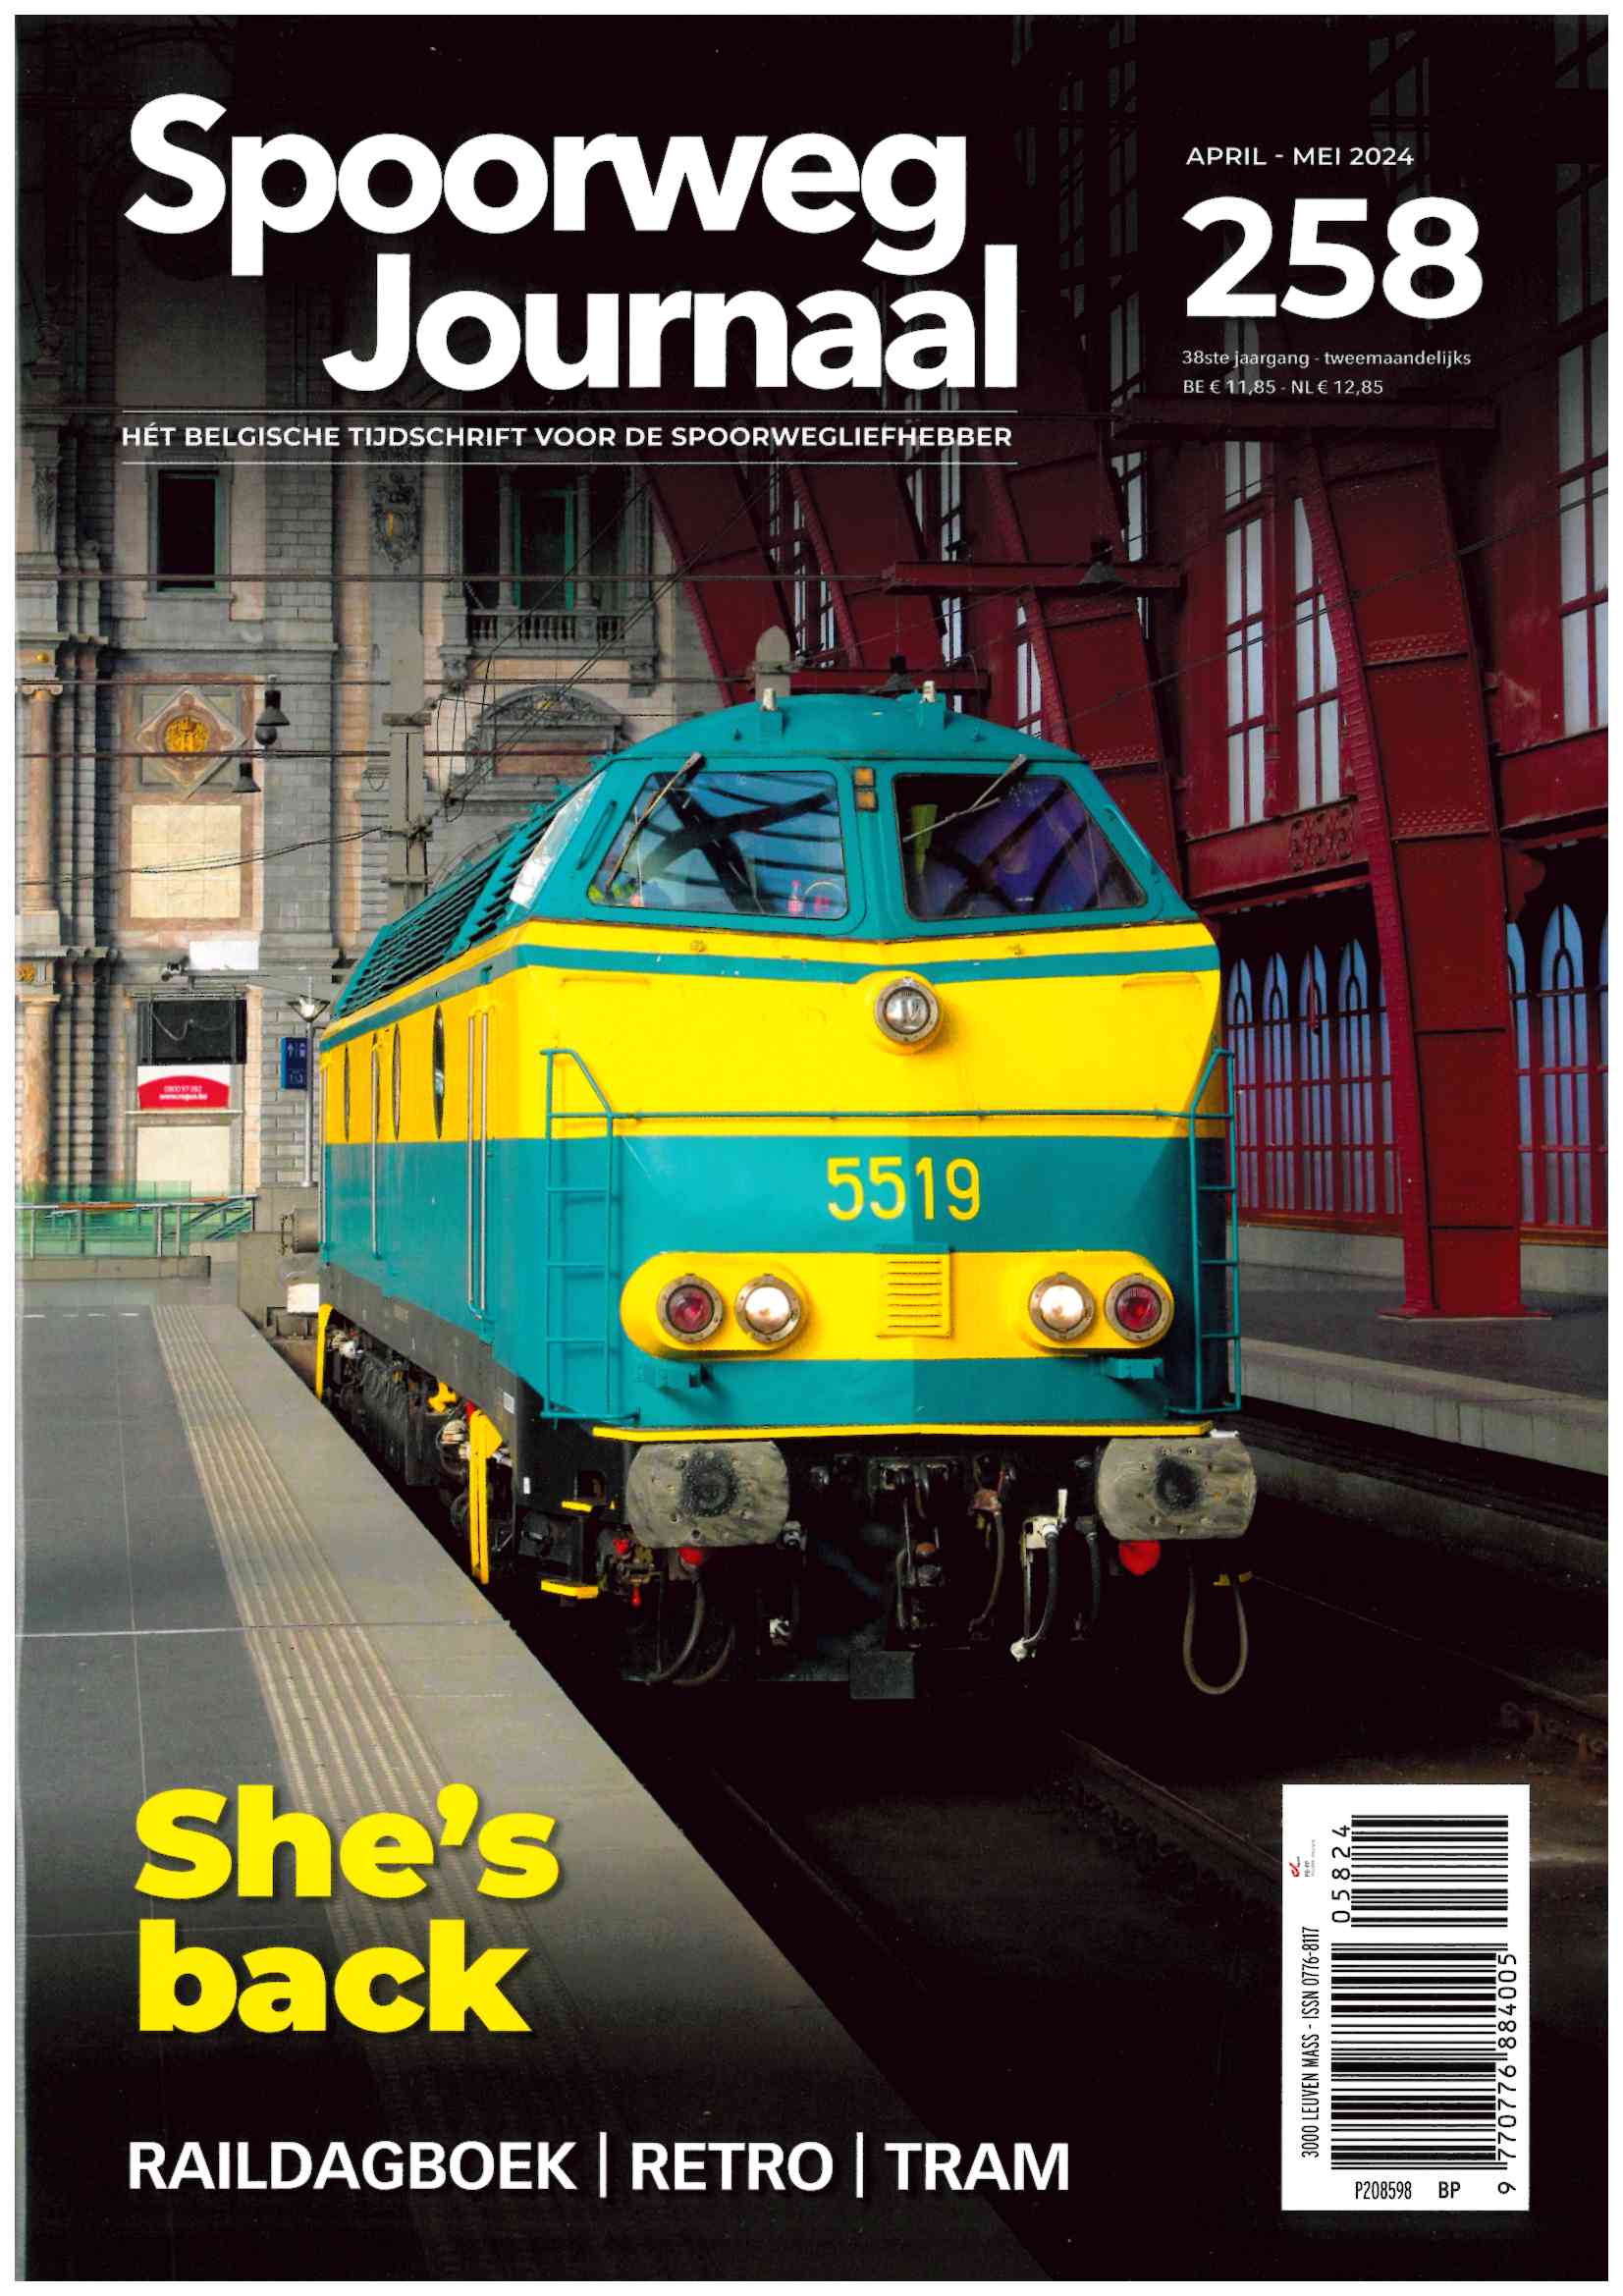 Spoorweg Journal 258 Het Belgisch Tijdschrift voor de spoorwegliefhebber - niederländische/flämische Ausgabe